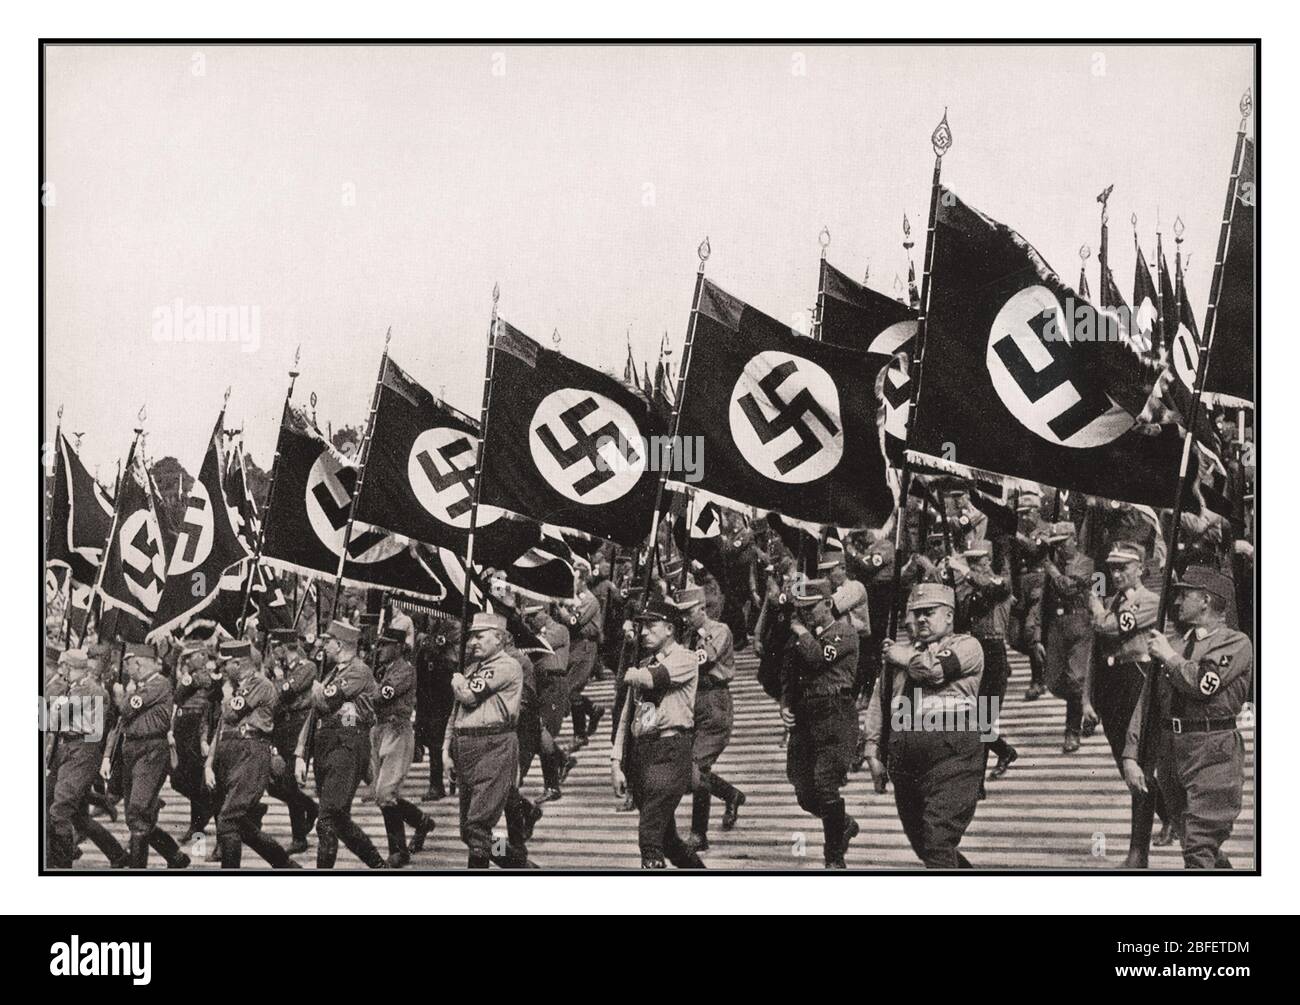 Sturmabteilung SA Truppen Vintage Nazi Deutsch Sturmabteilung SA Truppen marschieren mit Nazi Swastika Flaggen bei Nazi Rallye Nürnberg Deutschland 1933. Als Hauptcover für Propagandafilm 'Triumph des Willens' von Leni Riefenstahl Stockfoto